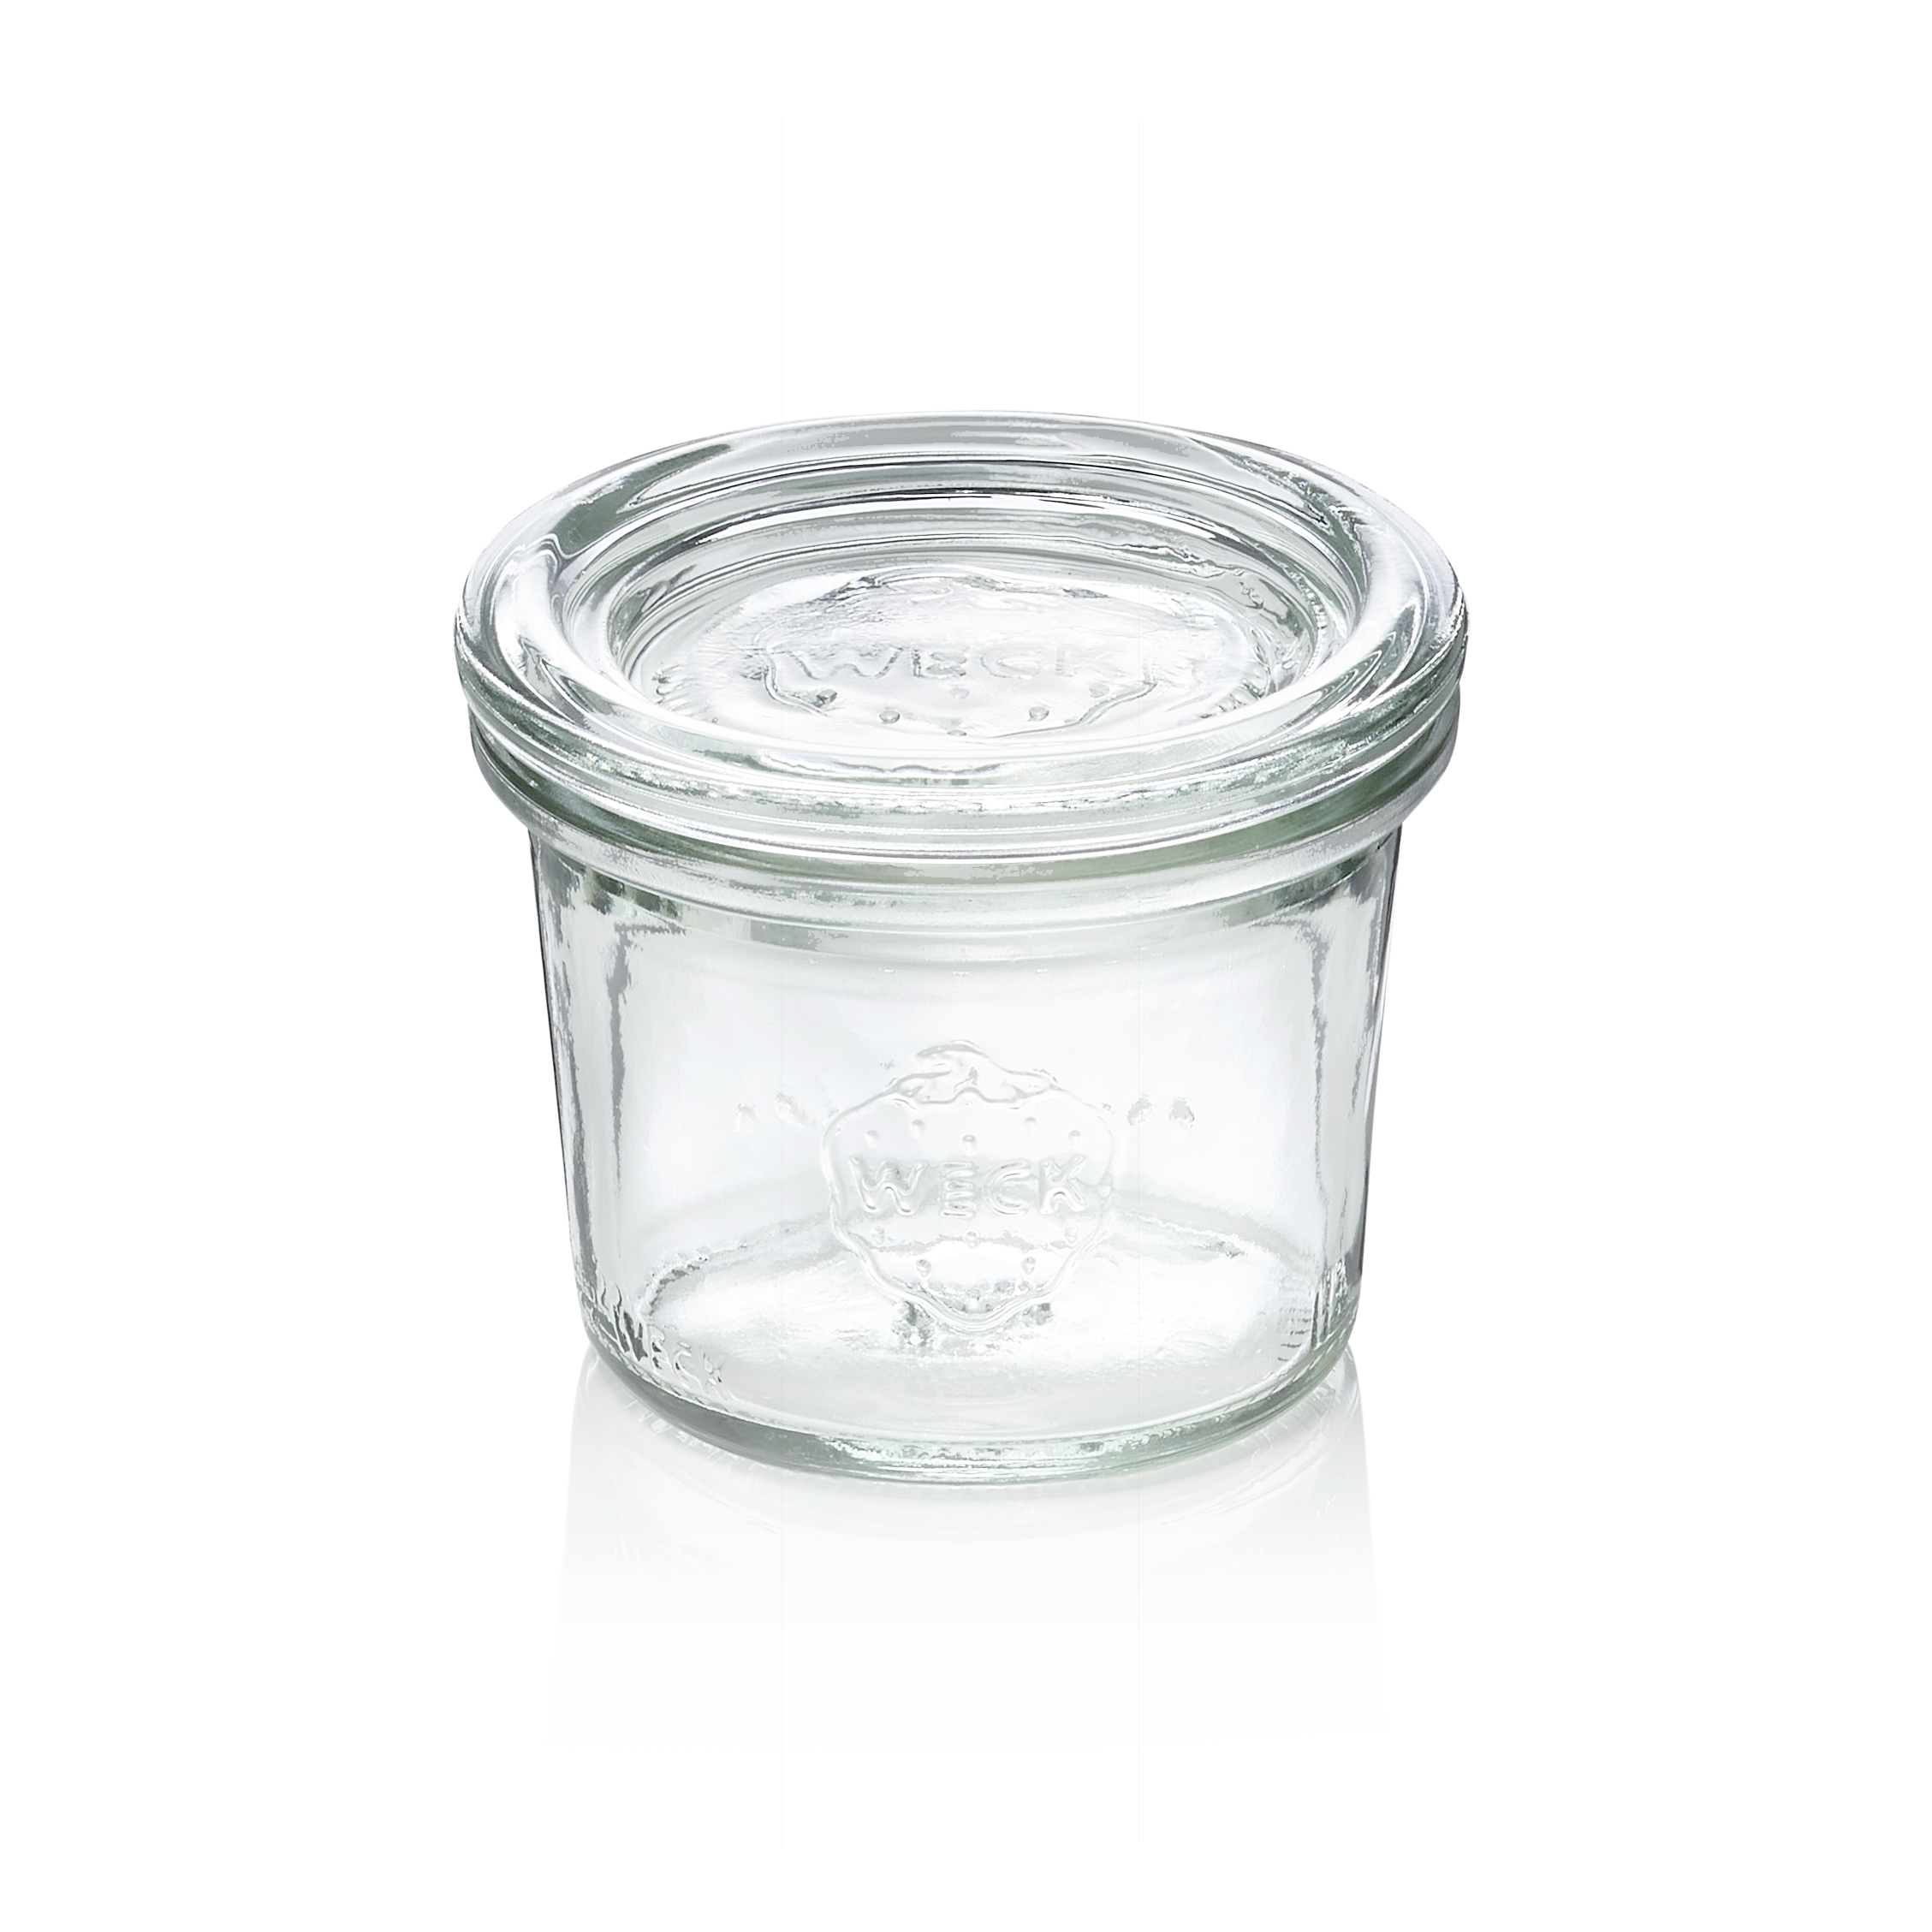 WAS Sturzglas mit Deckel Weck, 35 ml, Set á 12 Stück, Glas